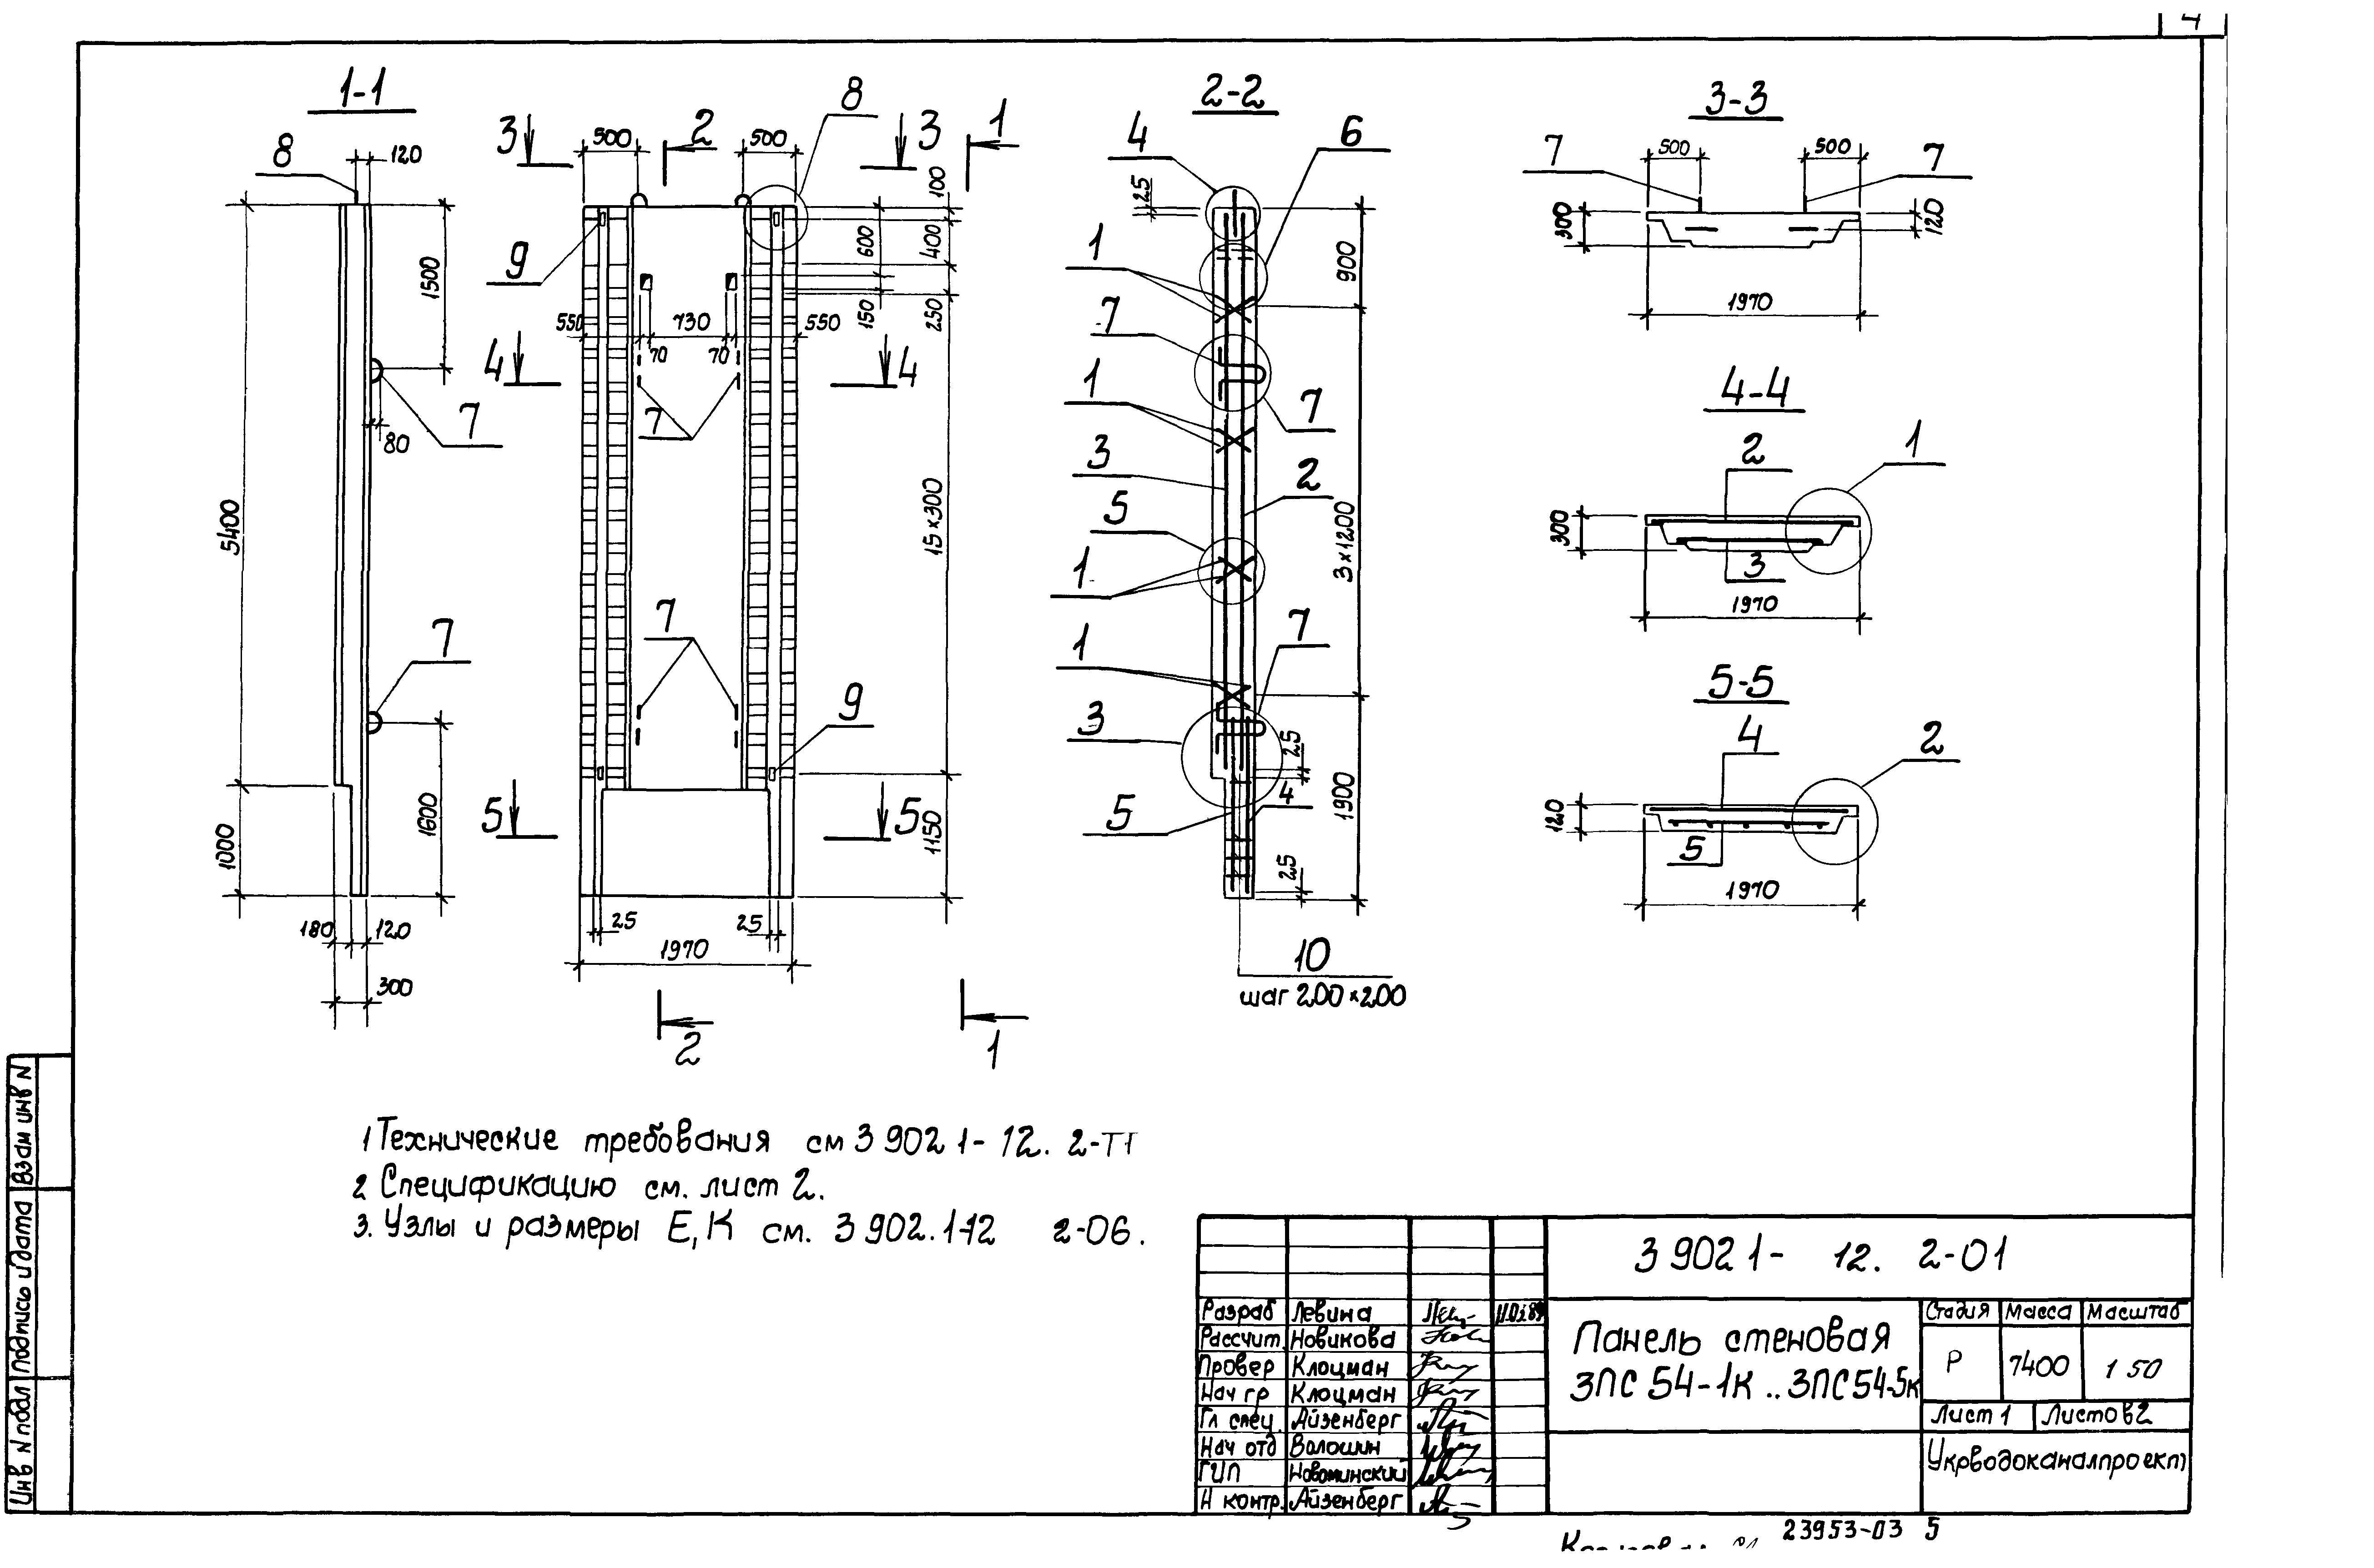 Панель стеновая 3ПС54-5к Серия 3.902.1-12, вып.2